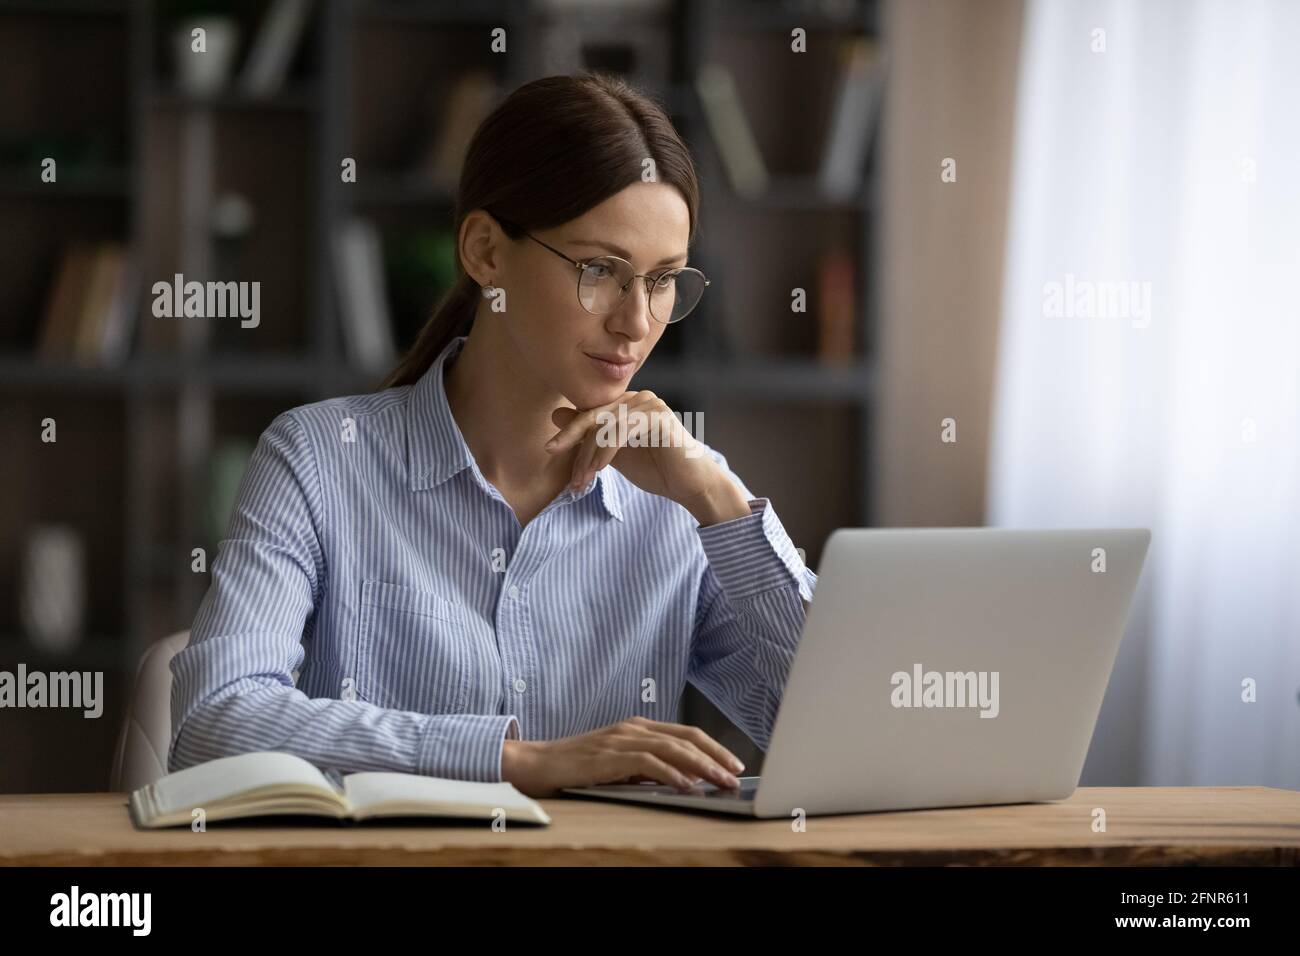 Jeune femme concentrée engagée dans un travail informatique au bureau à domicile Banque D'Images